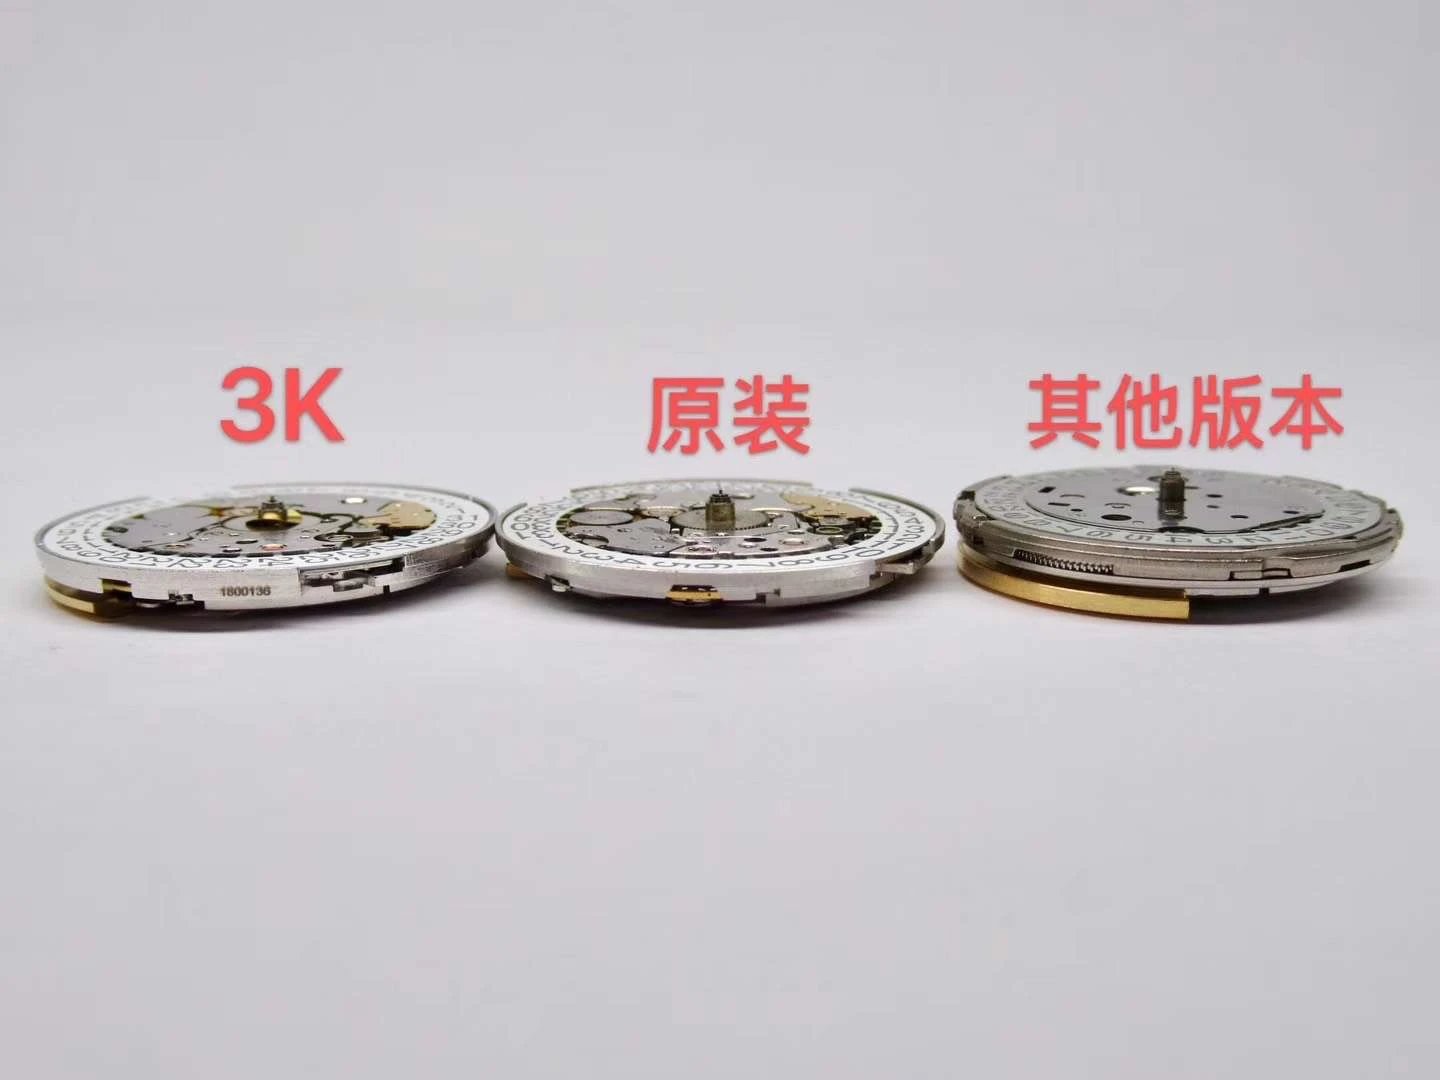 3K百达翡丽手雷全新订制版百达专‎Cal.324SC自动上‎链机芯。厚度一致完全实现